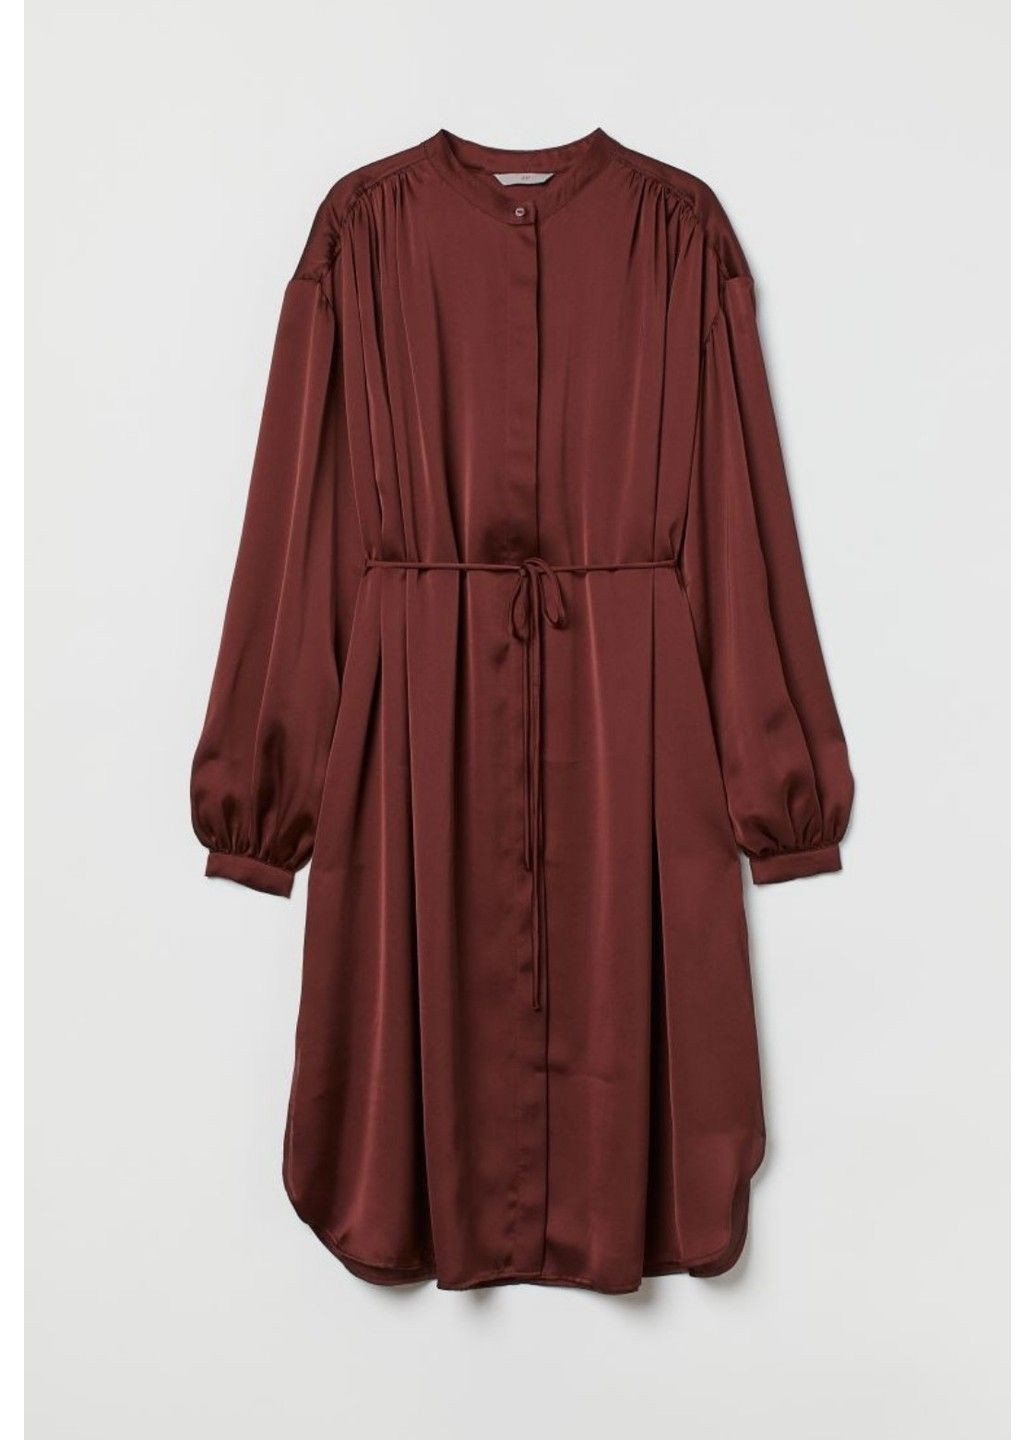 Коричневое деловое женское платье с поясом на завязи н&м (56670) s коричневое H&M